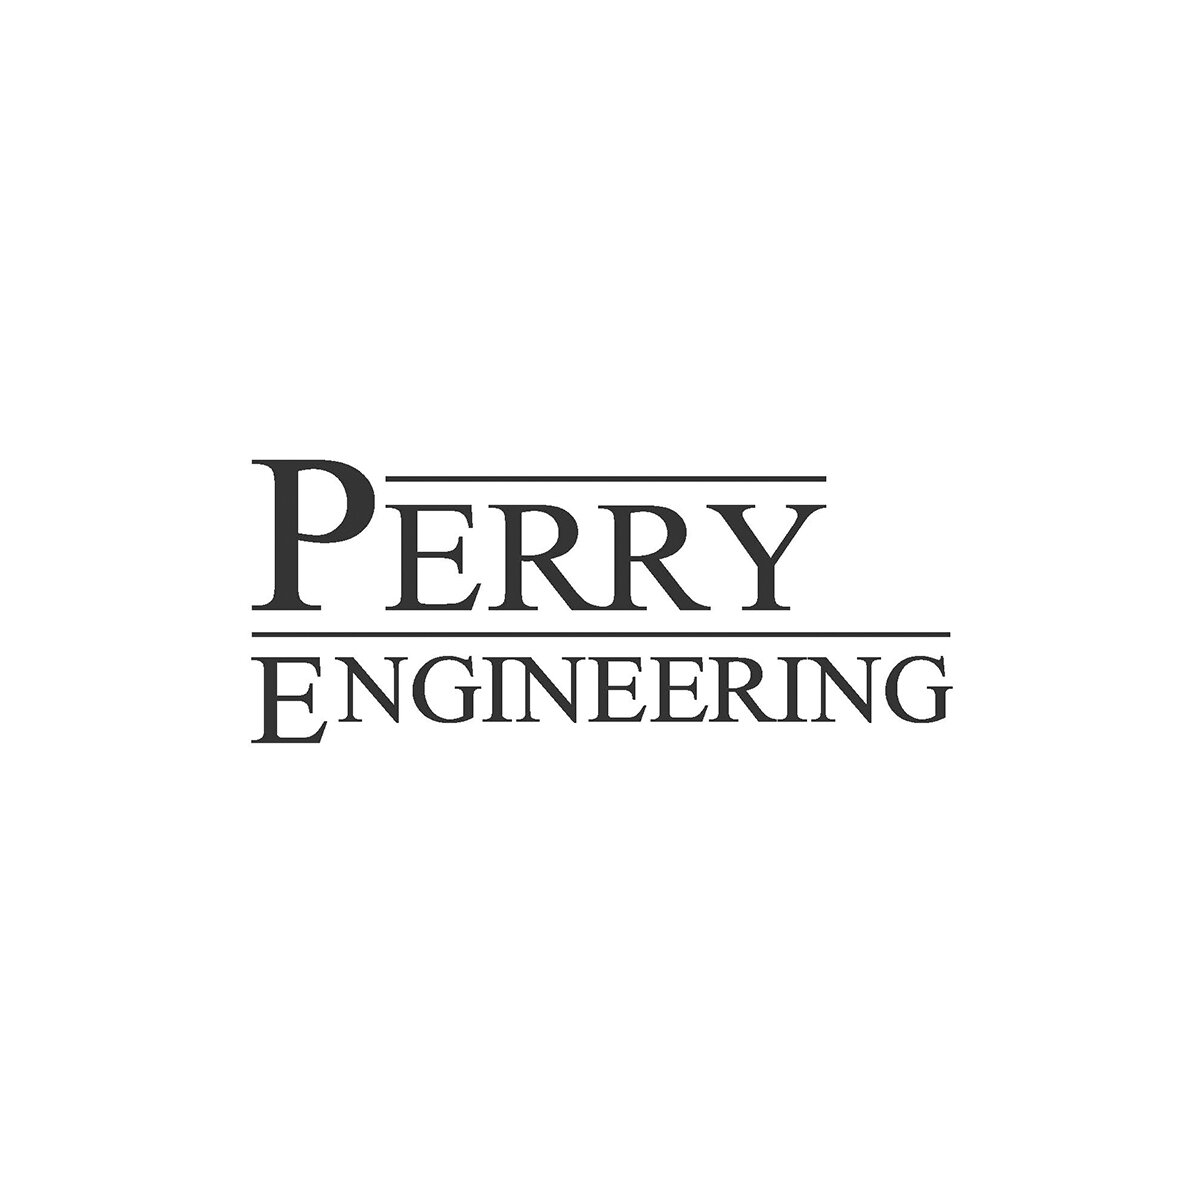 Perry Engineering logo.jpg